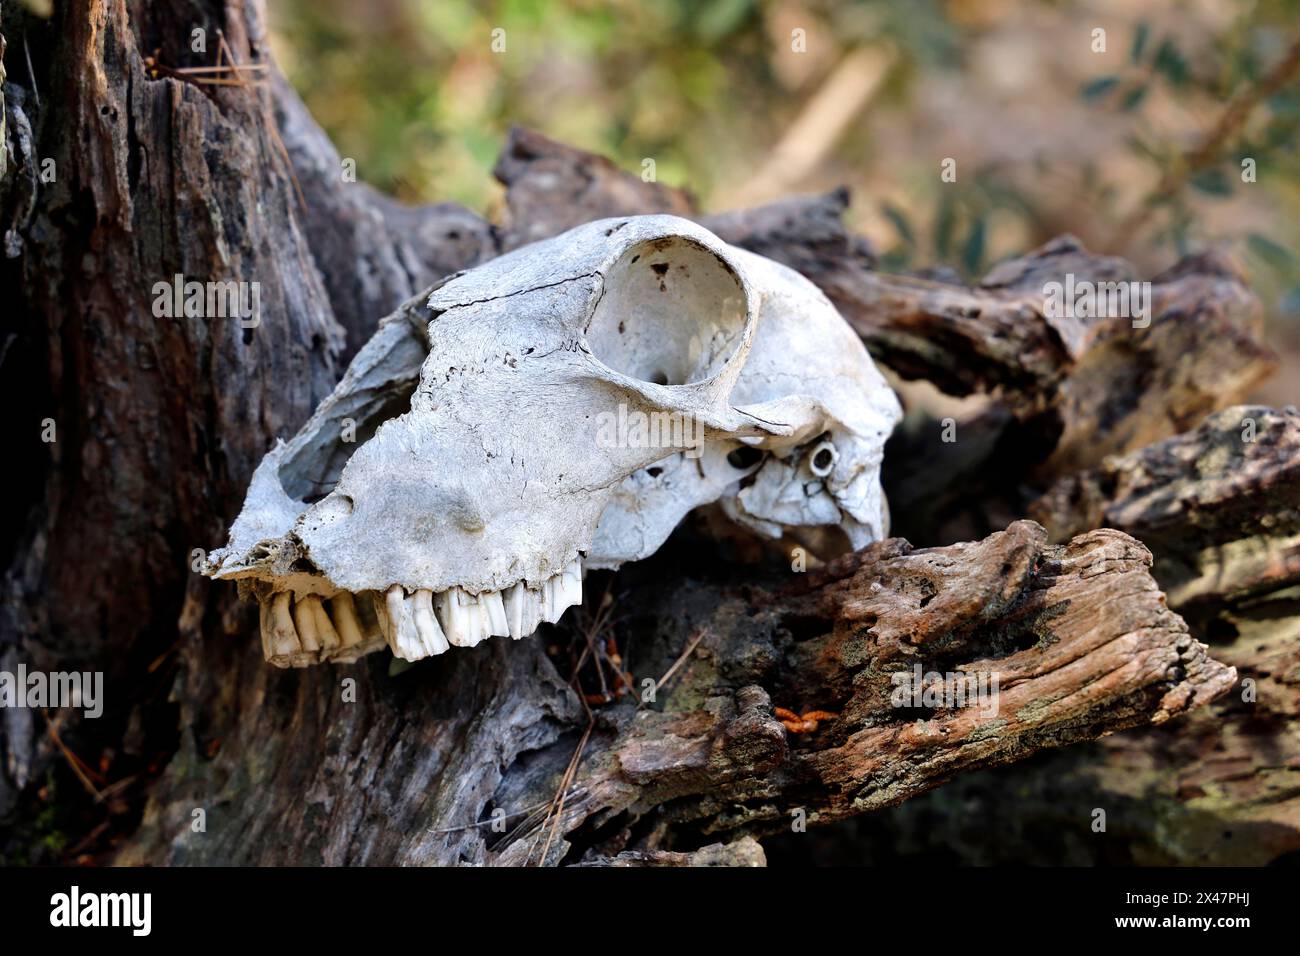 Crâne d'un animal couché dans la forêt sur une racine d'arbre, gros plan, concept de vie et de mort Banque D'Images